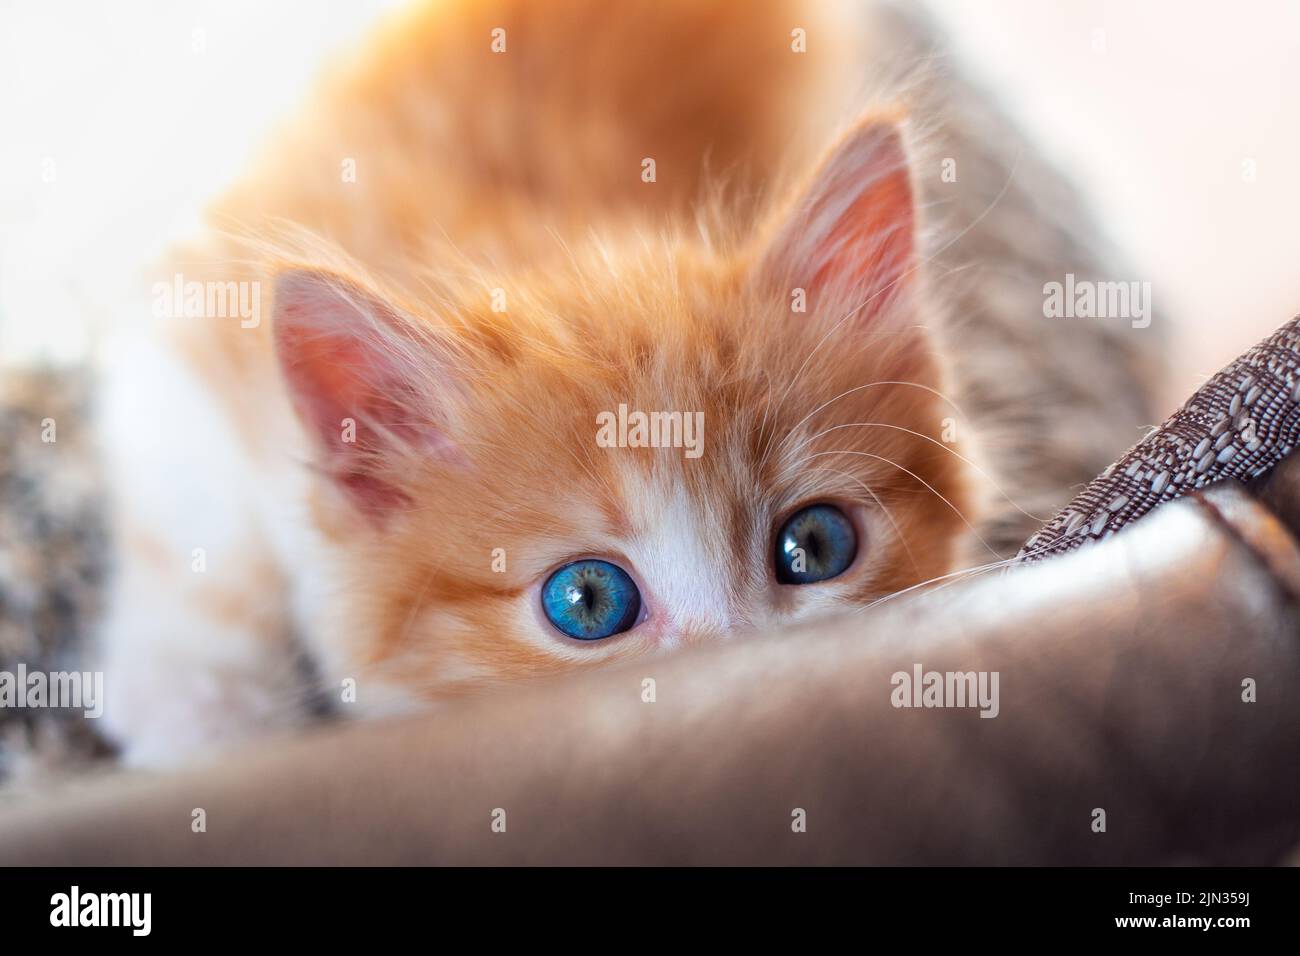 Ein kleines niedliches rotes Kätzchen mit blauen Augen blickt hinter dem Sofa hervor. Ausbildung von Haustieren. Stockfoto